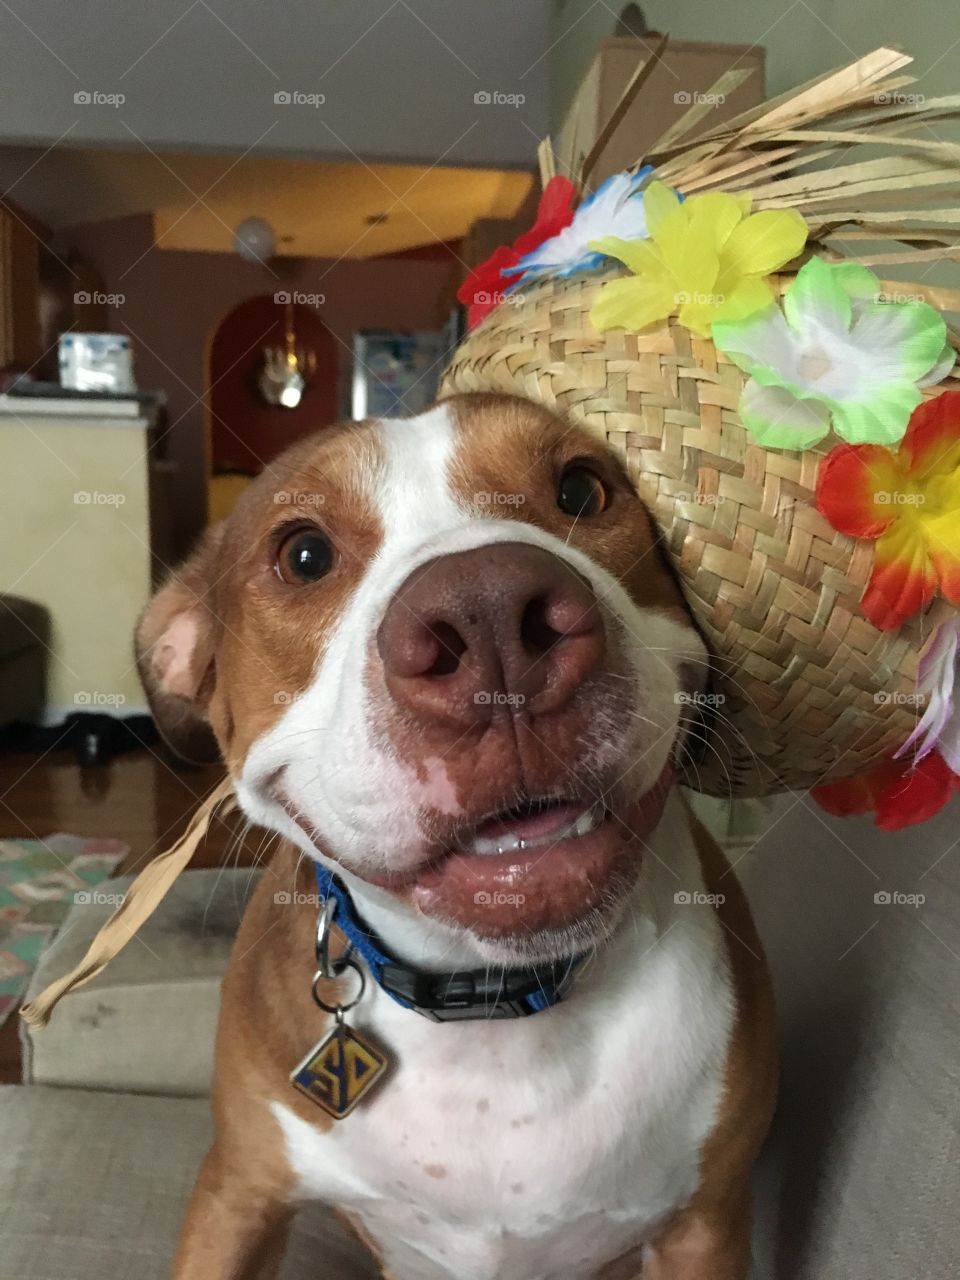 Cute pitbull wearing a Hawaiian hat